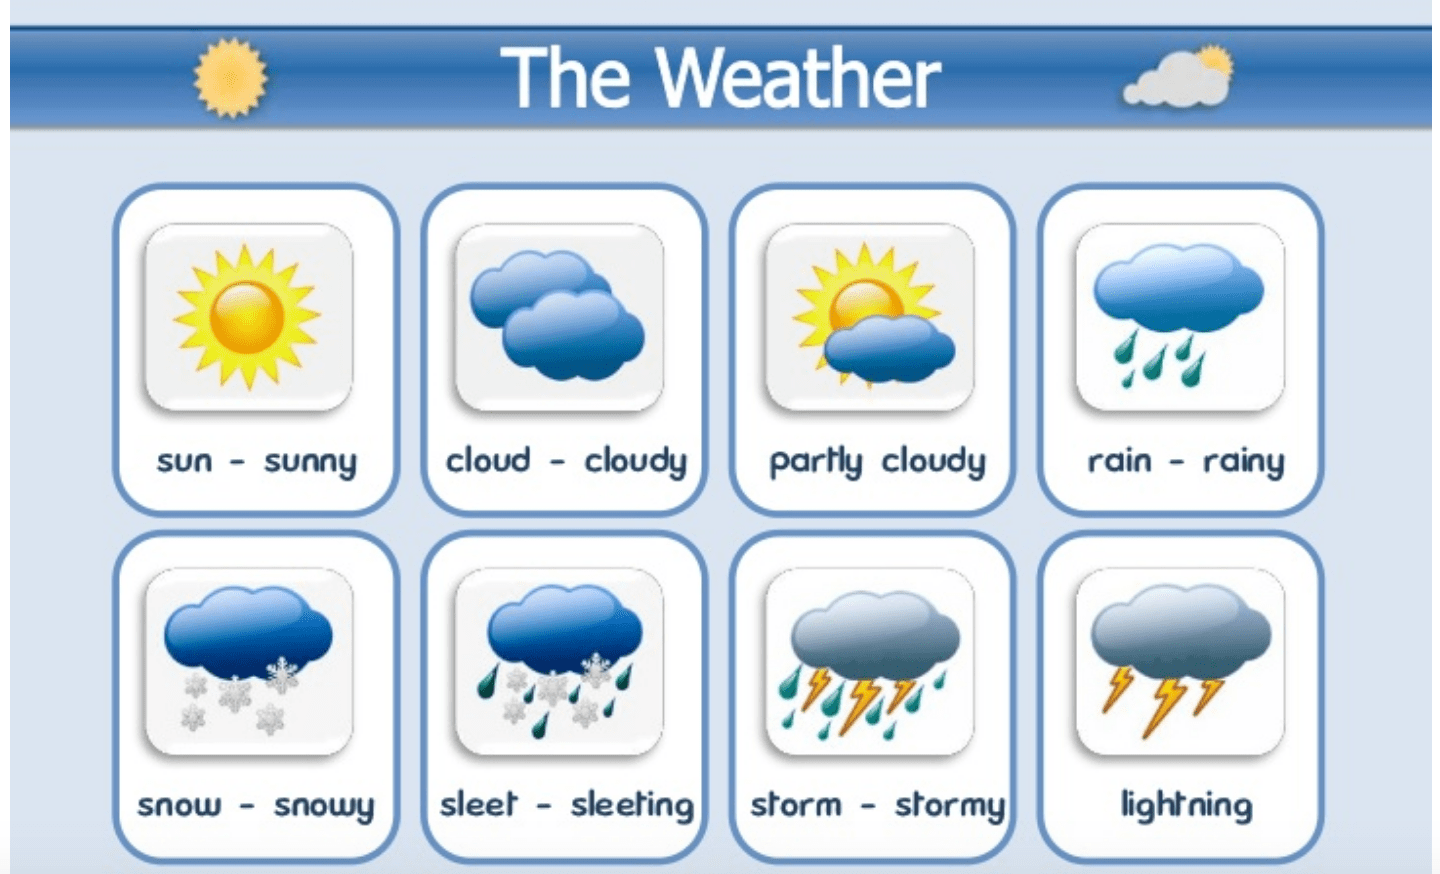 Từ vựng tiếng Anh về thời tiết